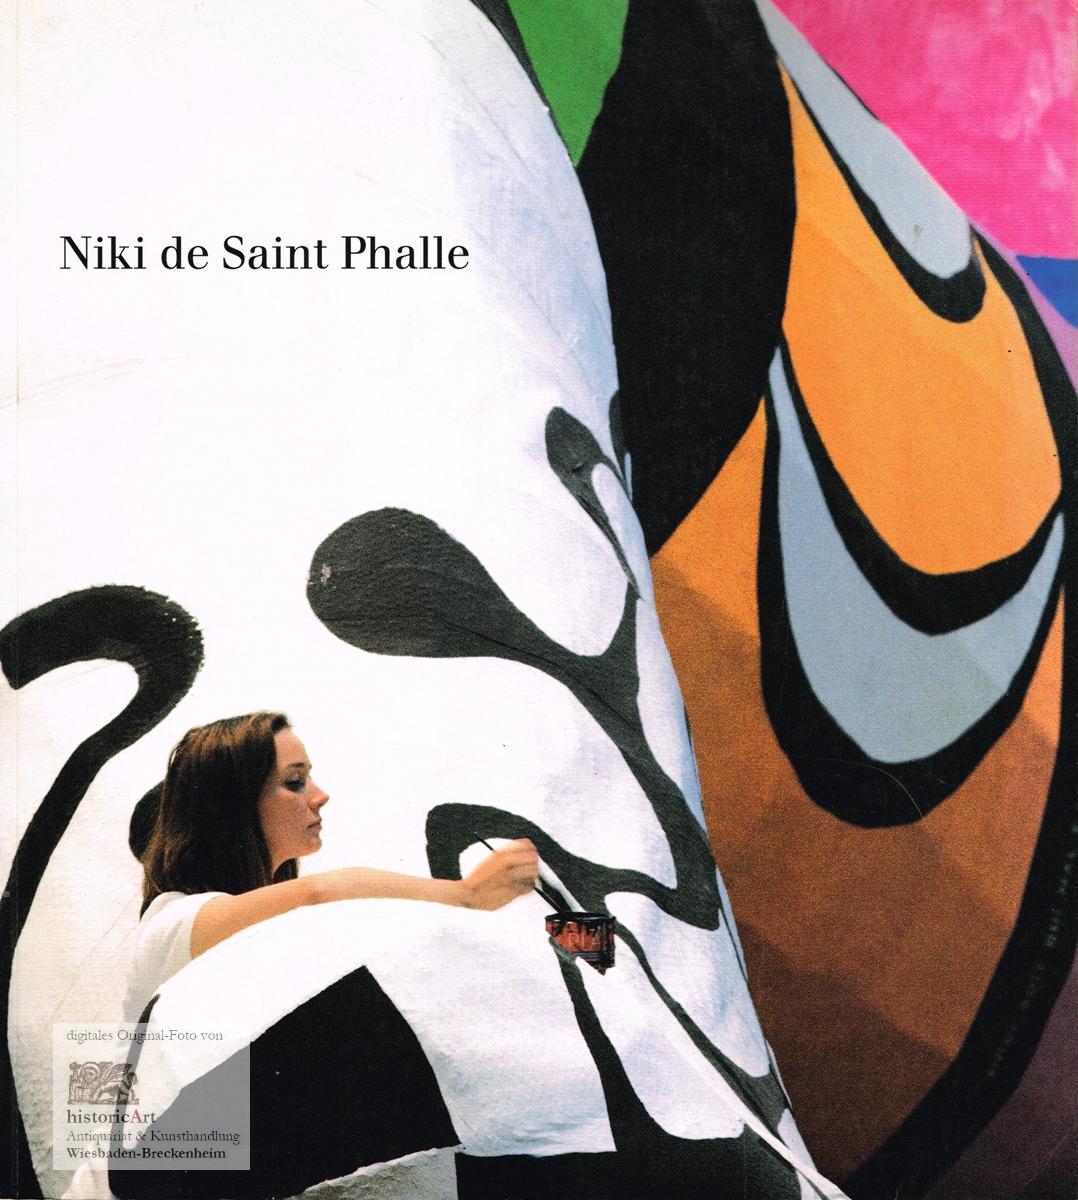 Niki de Saint Phalle: anläßlich der Ausstellung Niki de Saint Phalle vom 19. Juni bis 1. November 1992 in der Kunst- und Ausstellungshalle der Bundesrepublik Deutschland in Bonn